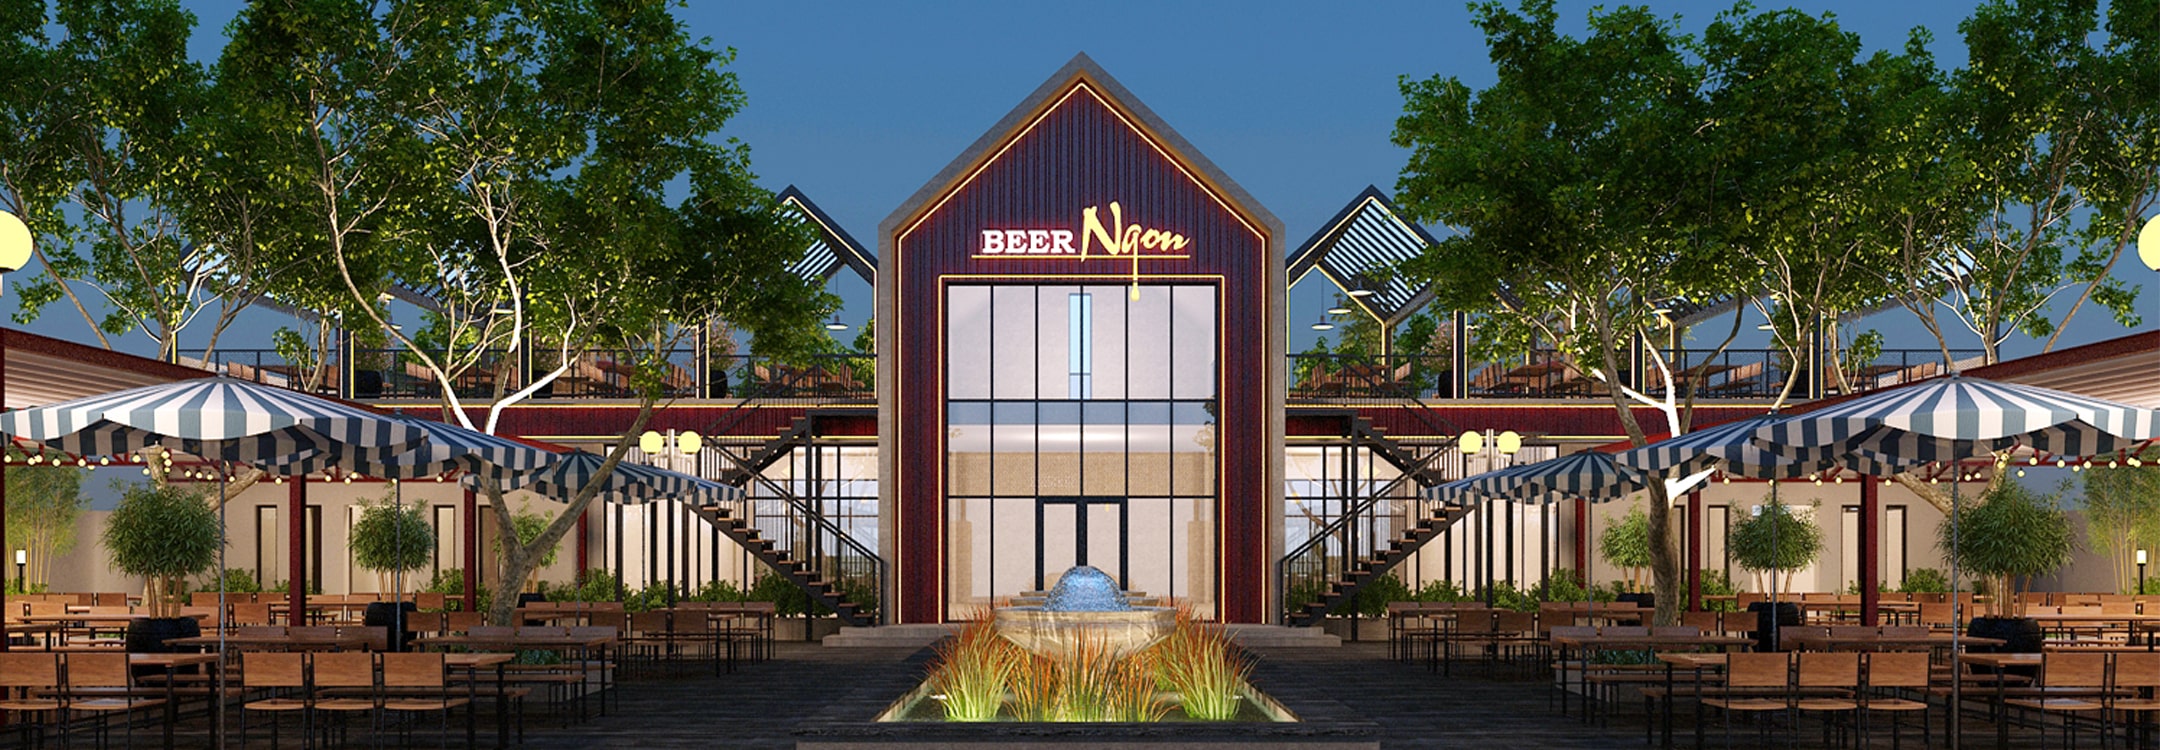 Beer restaurant design - Beer Club